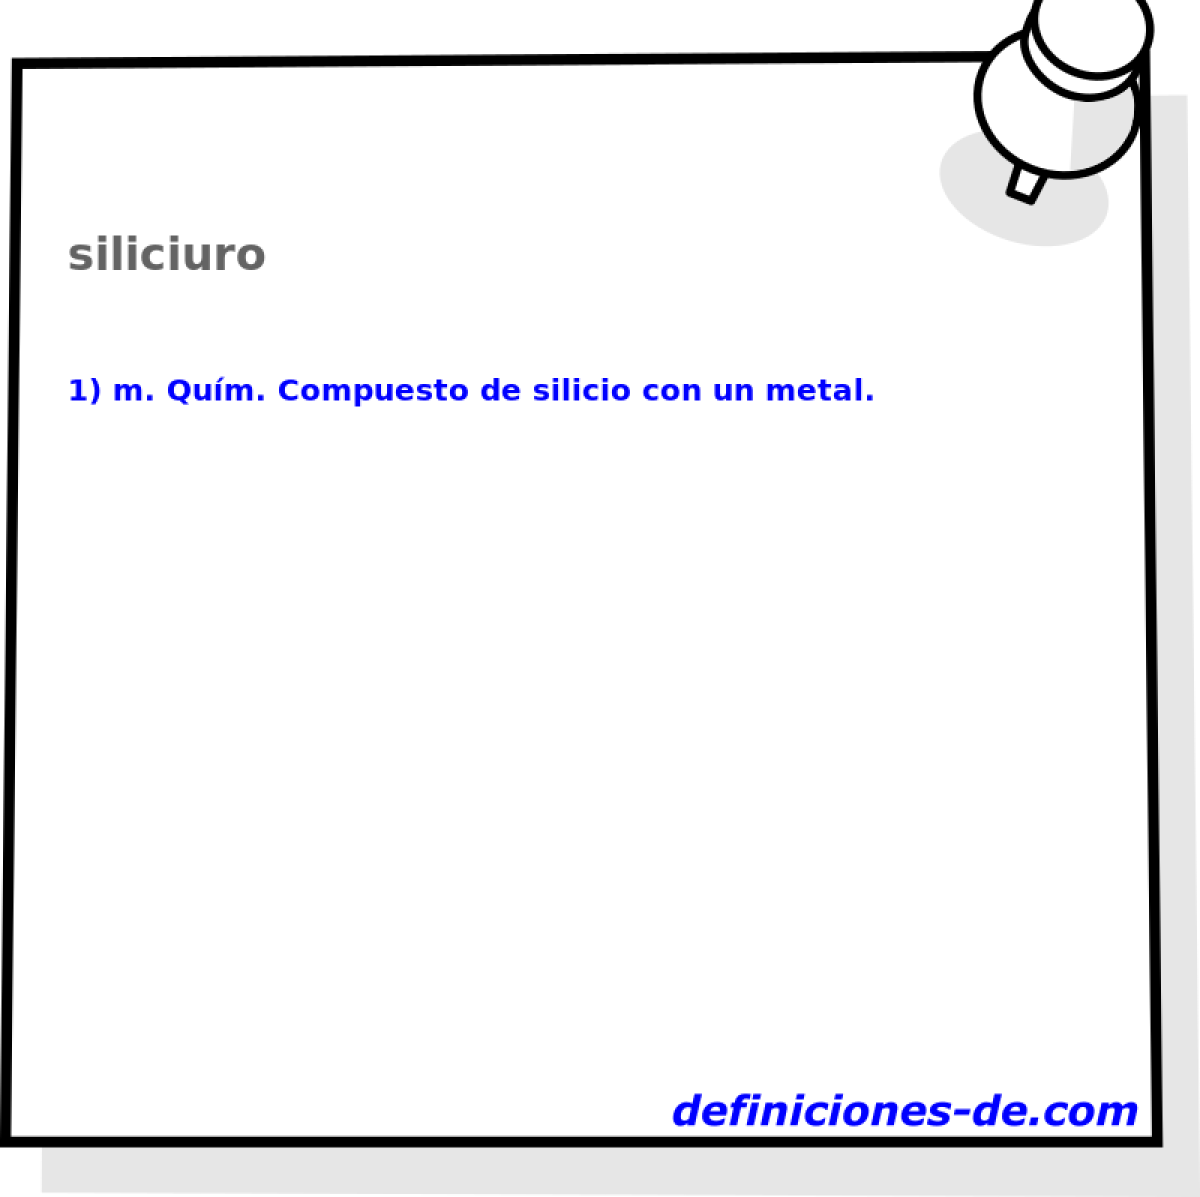 siliciuro 